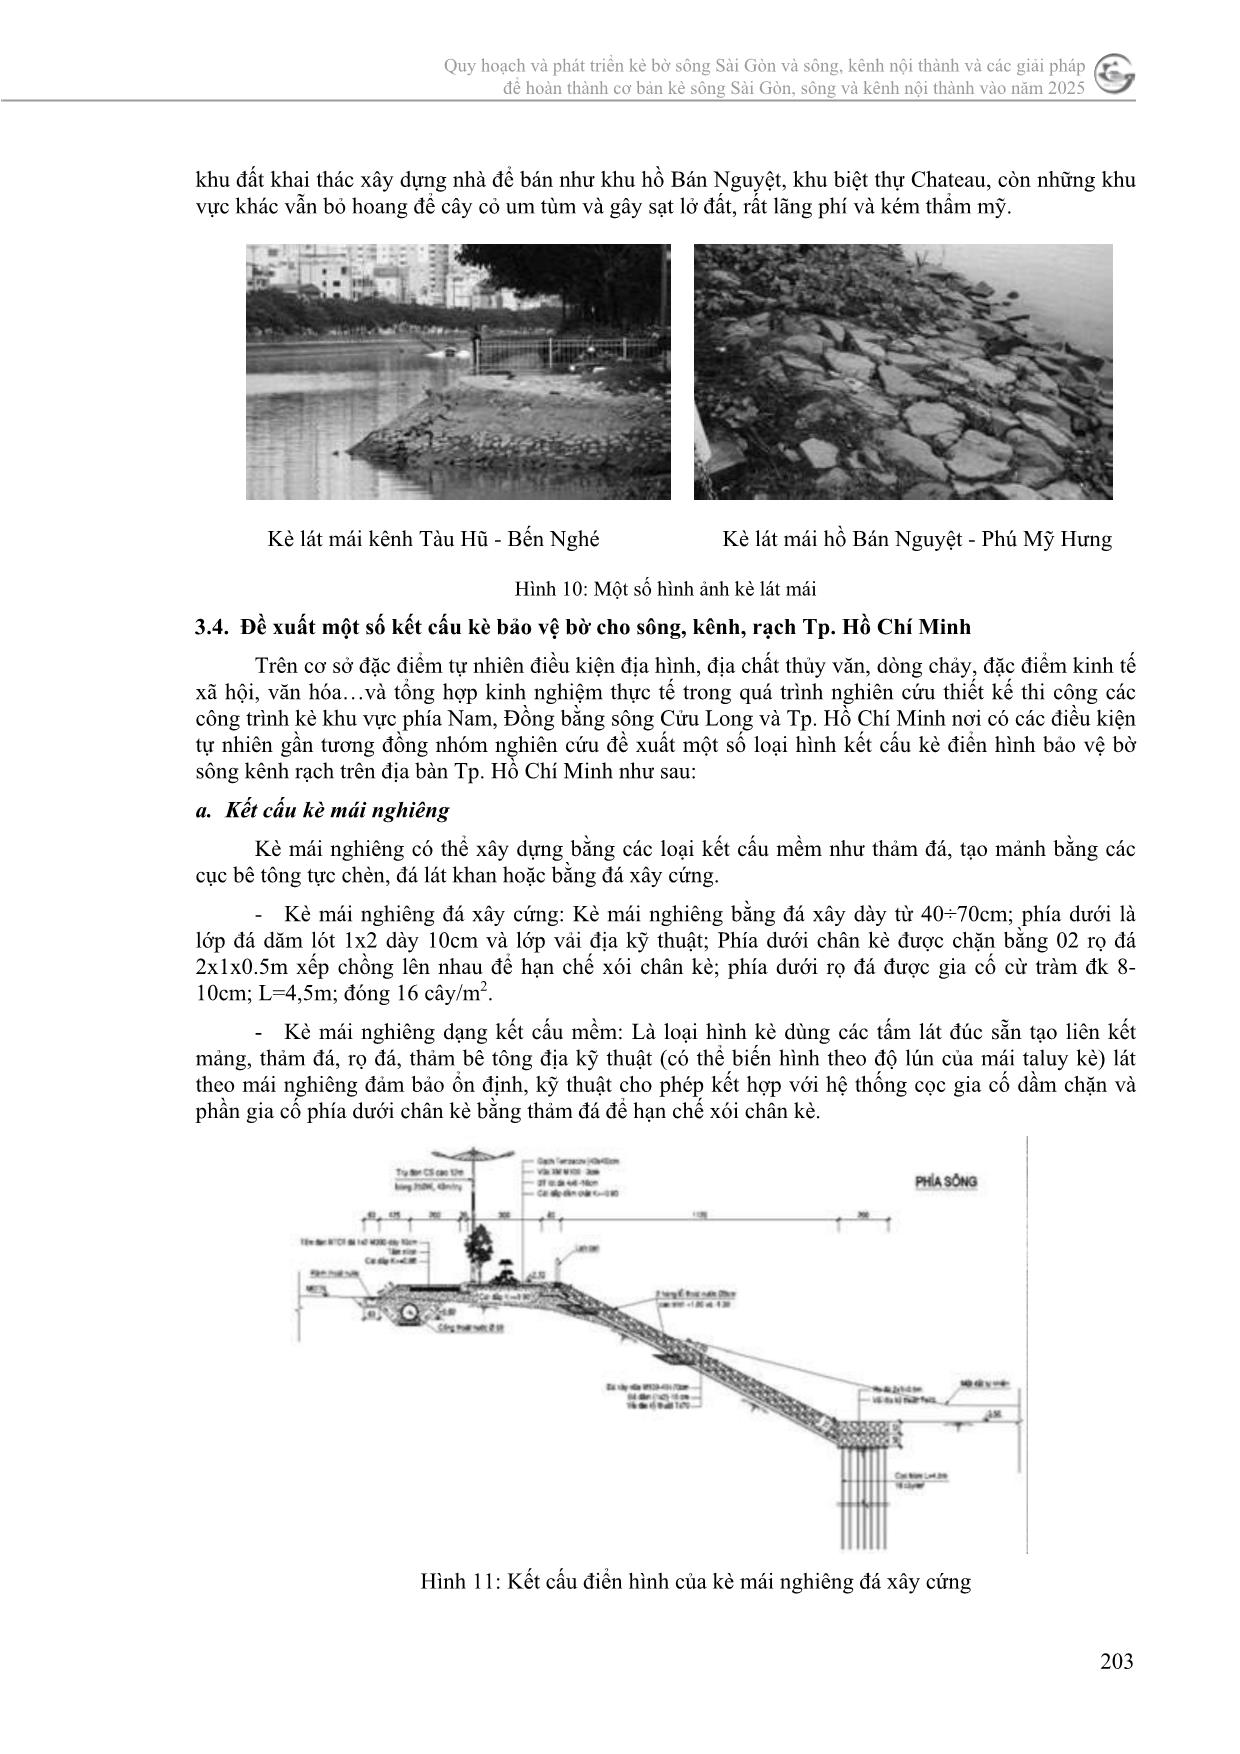 Đề xuất một số hình dạng, kết cấu kè bờ sông, kênh, rạch trên địa bàn thành phố Hồ Chí Minh trang 8